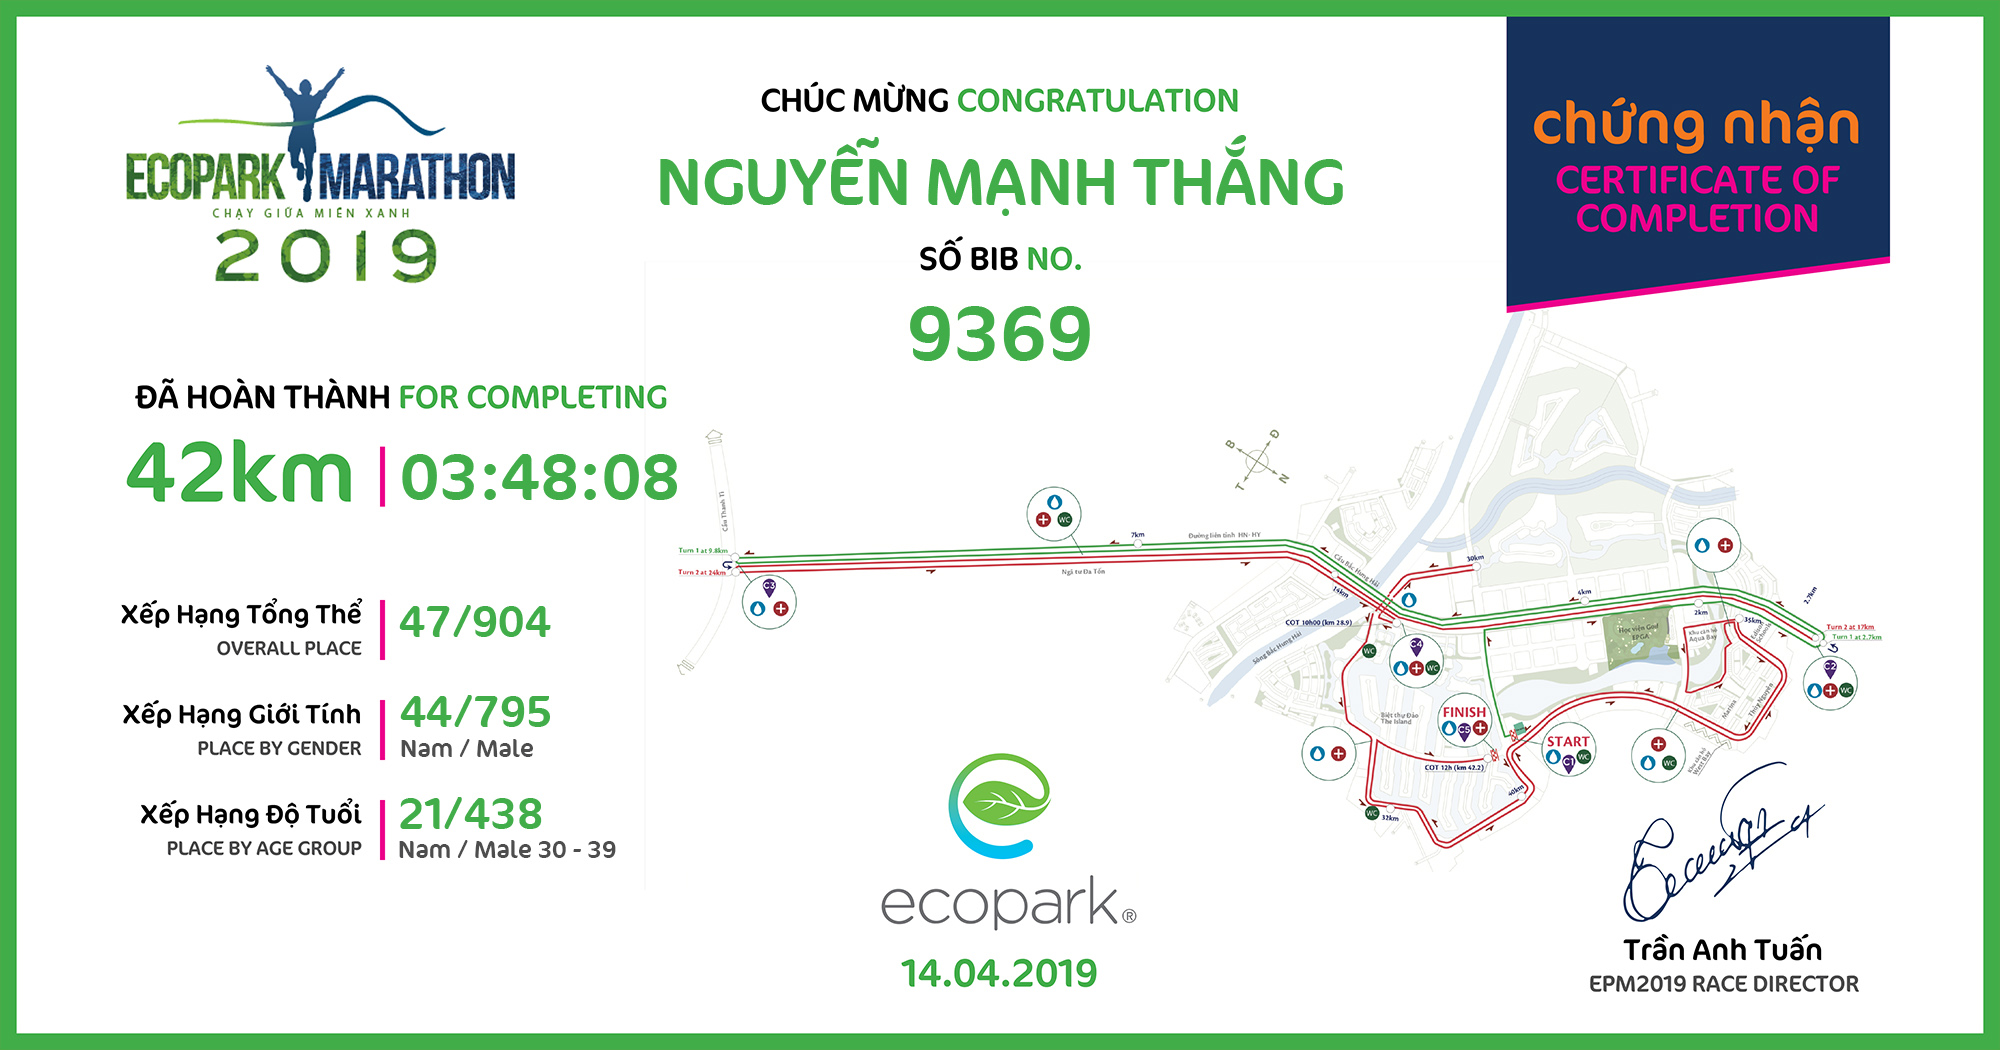 9369 - Nguyễn Mạnh Thắng